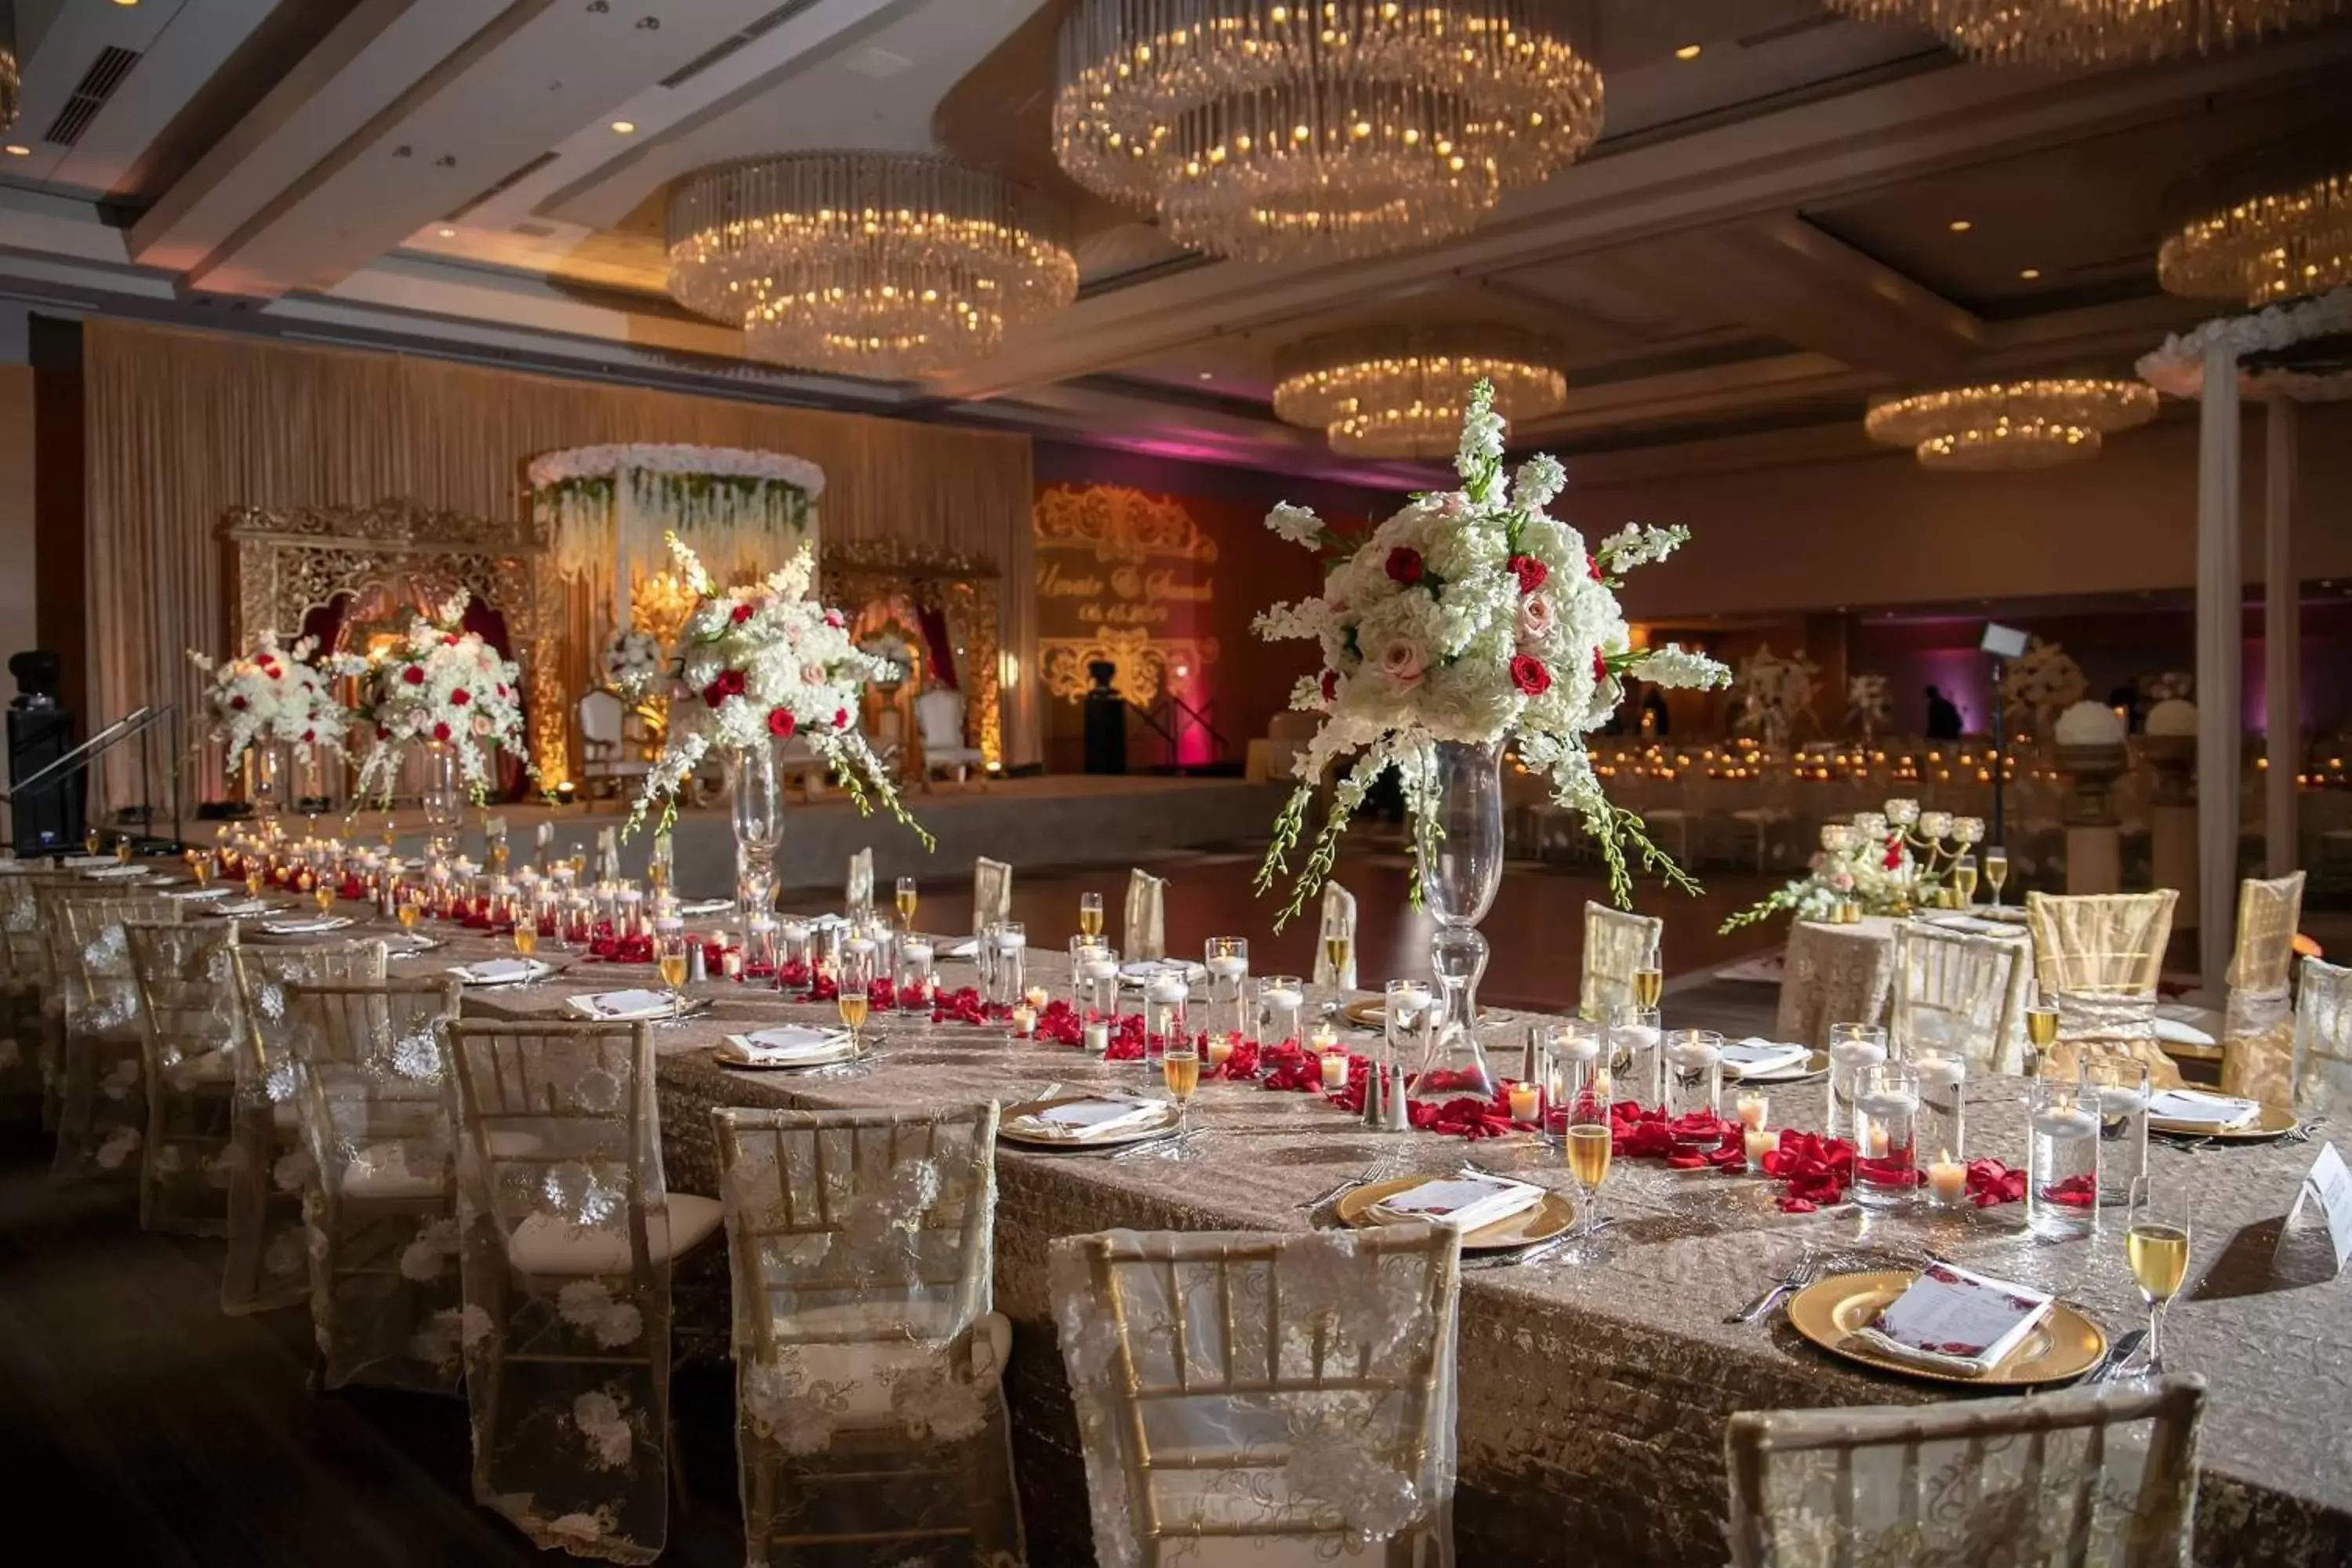 Banquet/Function facilities, Banquet Facilities in Atlanta Marriott Marquis